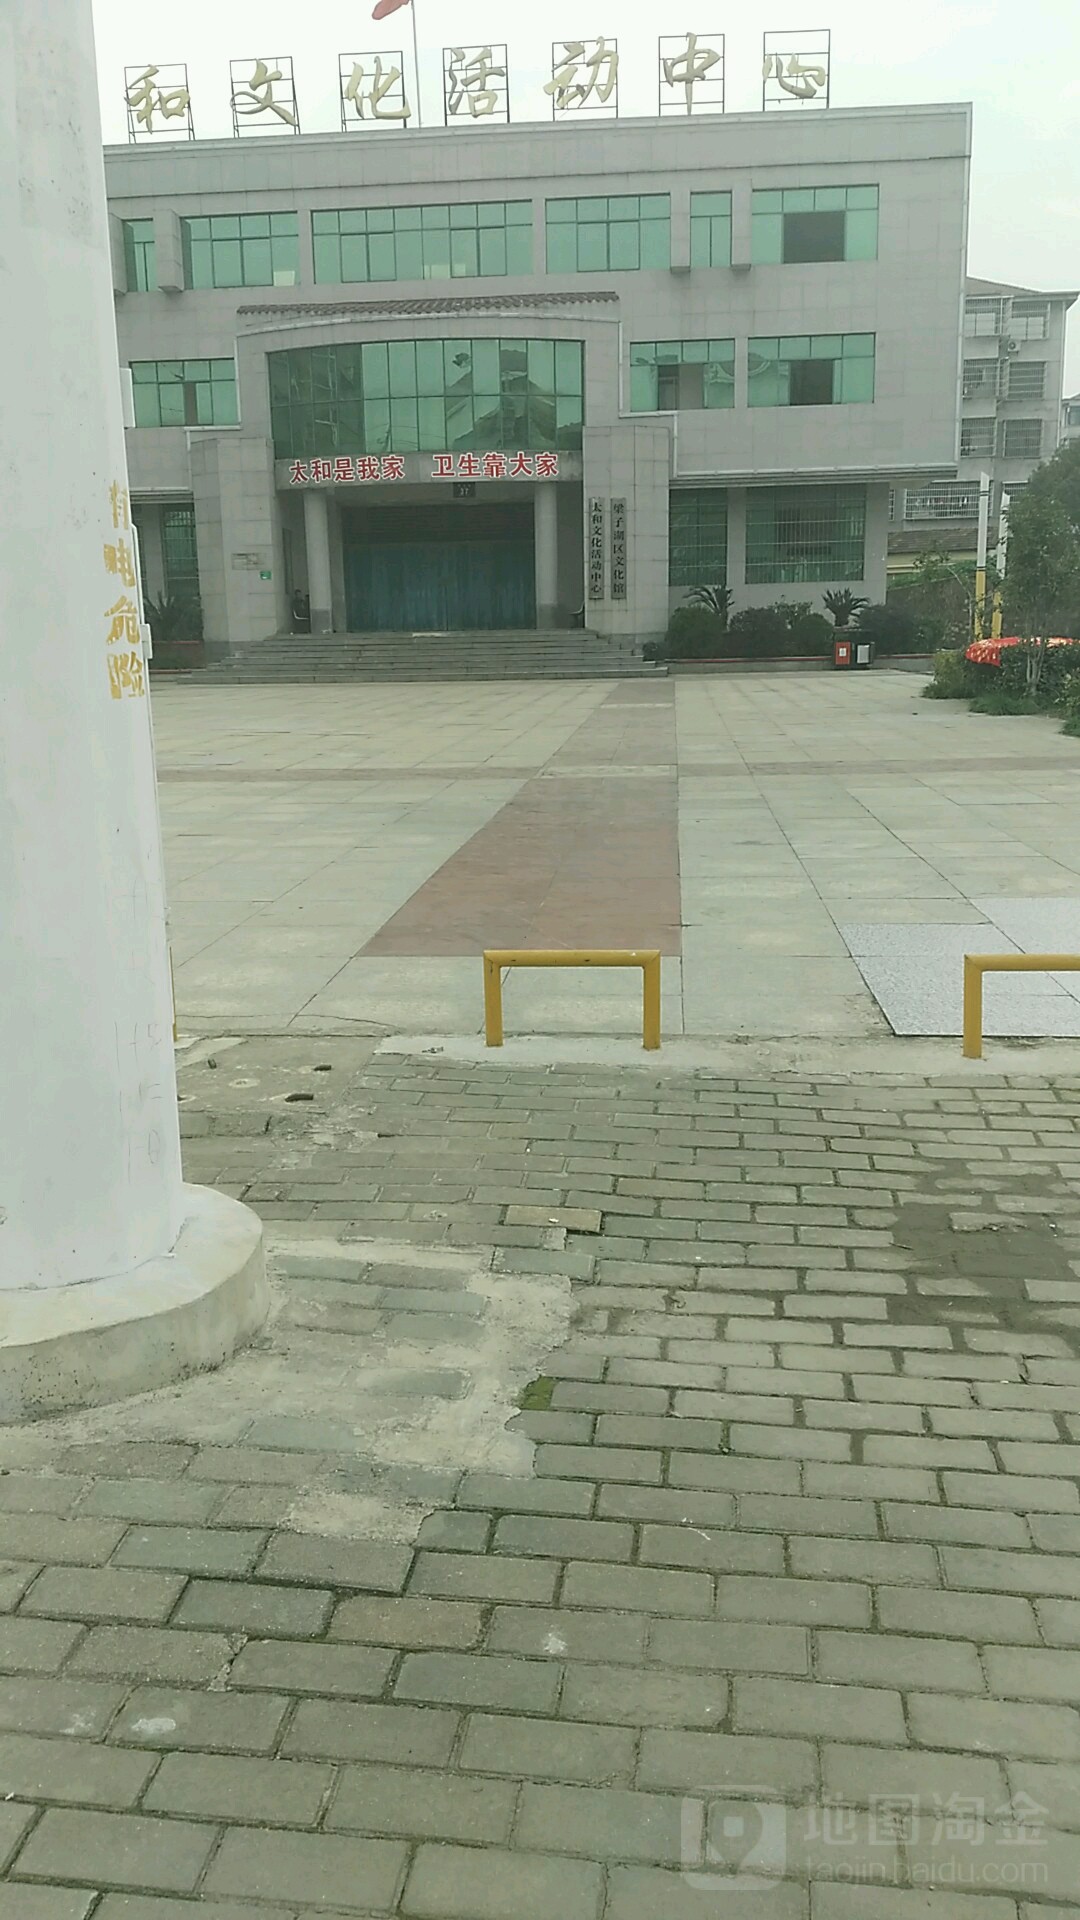 梁子湖区化广场馆